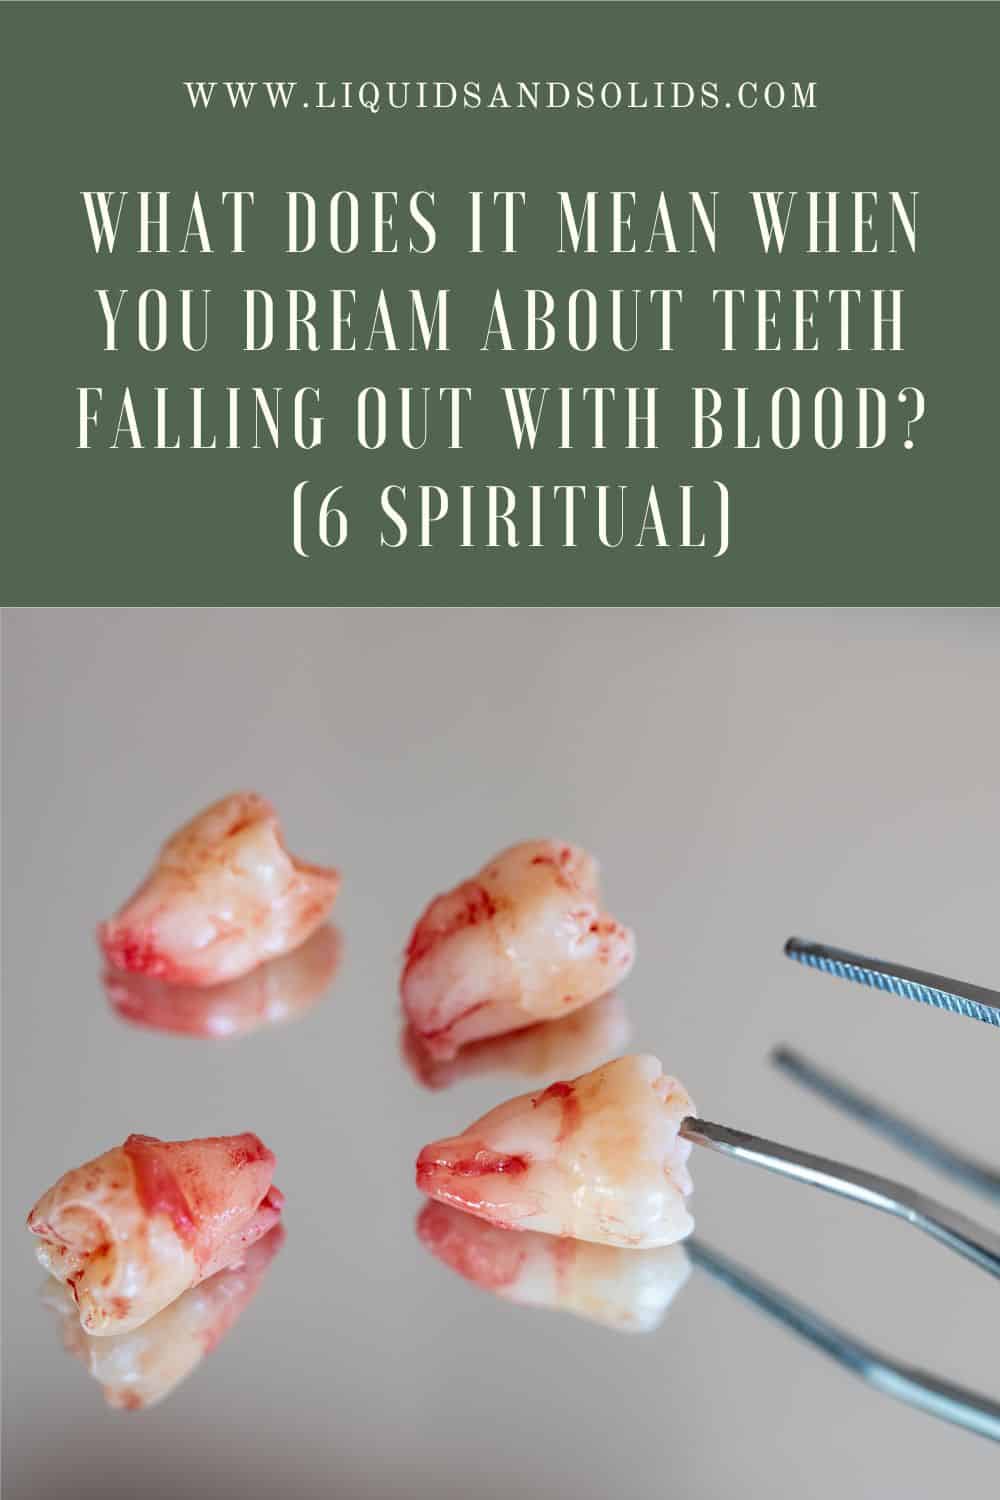  Drøm om tænder, der falder ud med blod? (6 åndelige betydninger)